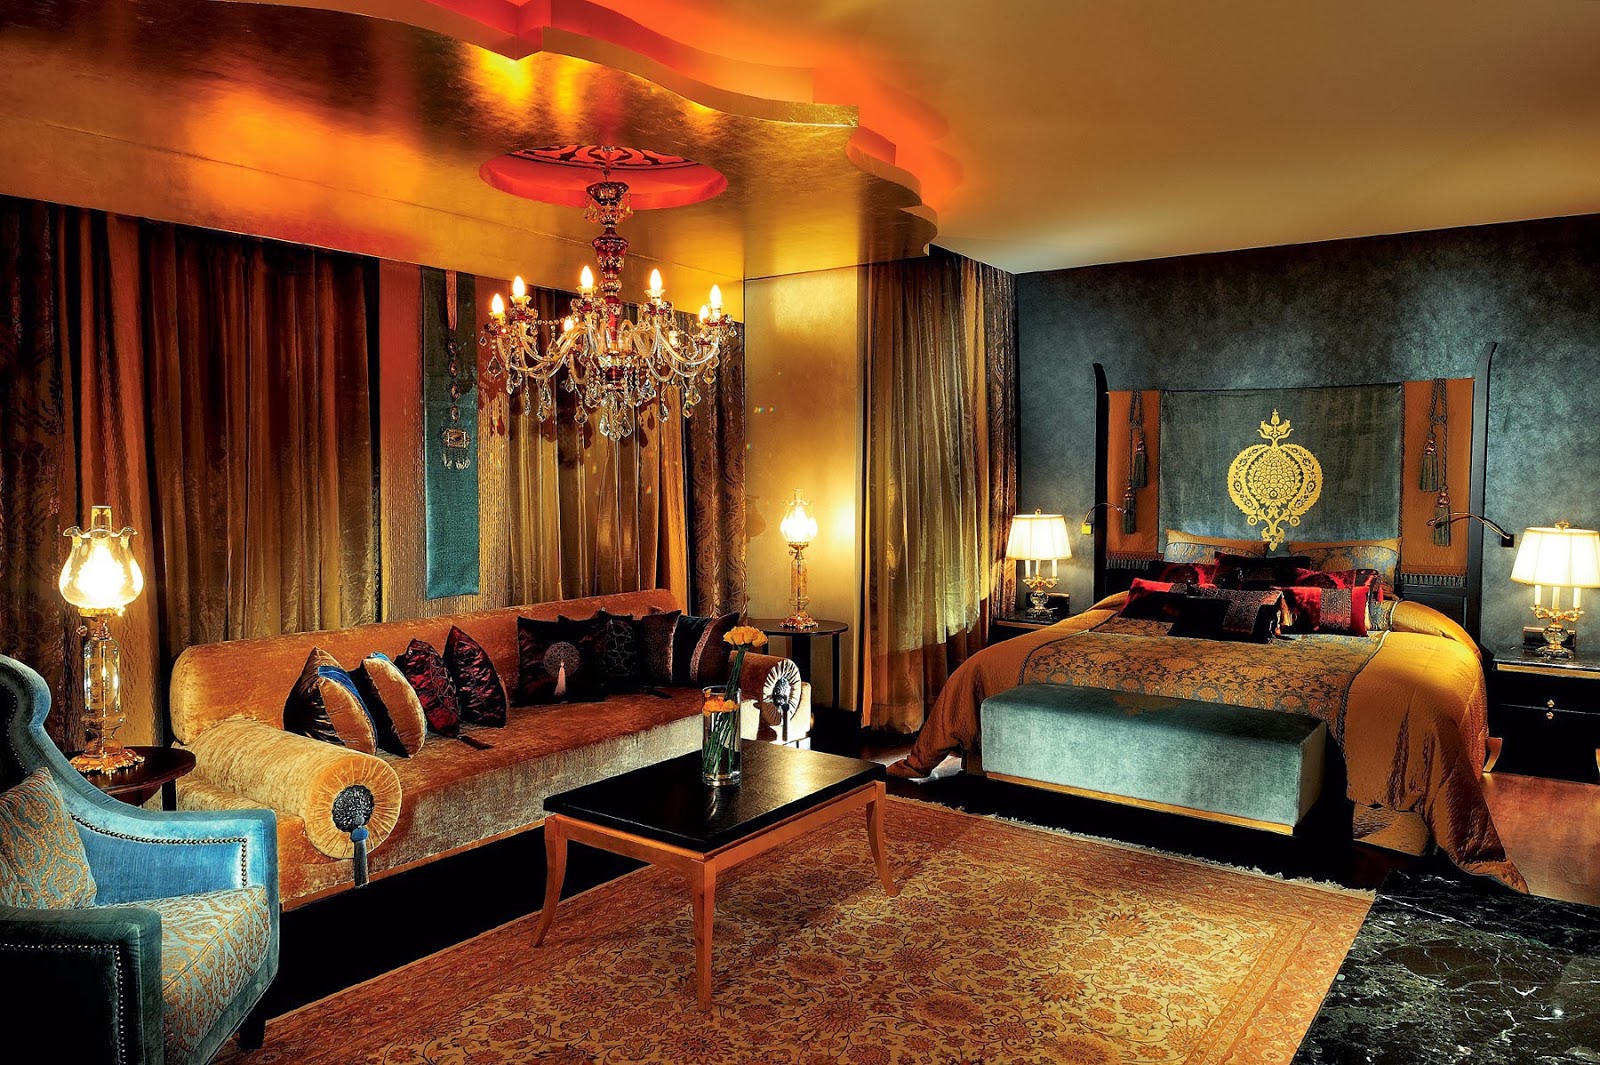 Antalya (Turchia) - Mardan Palace 5* - Hotel da Sogno